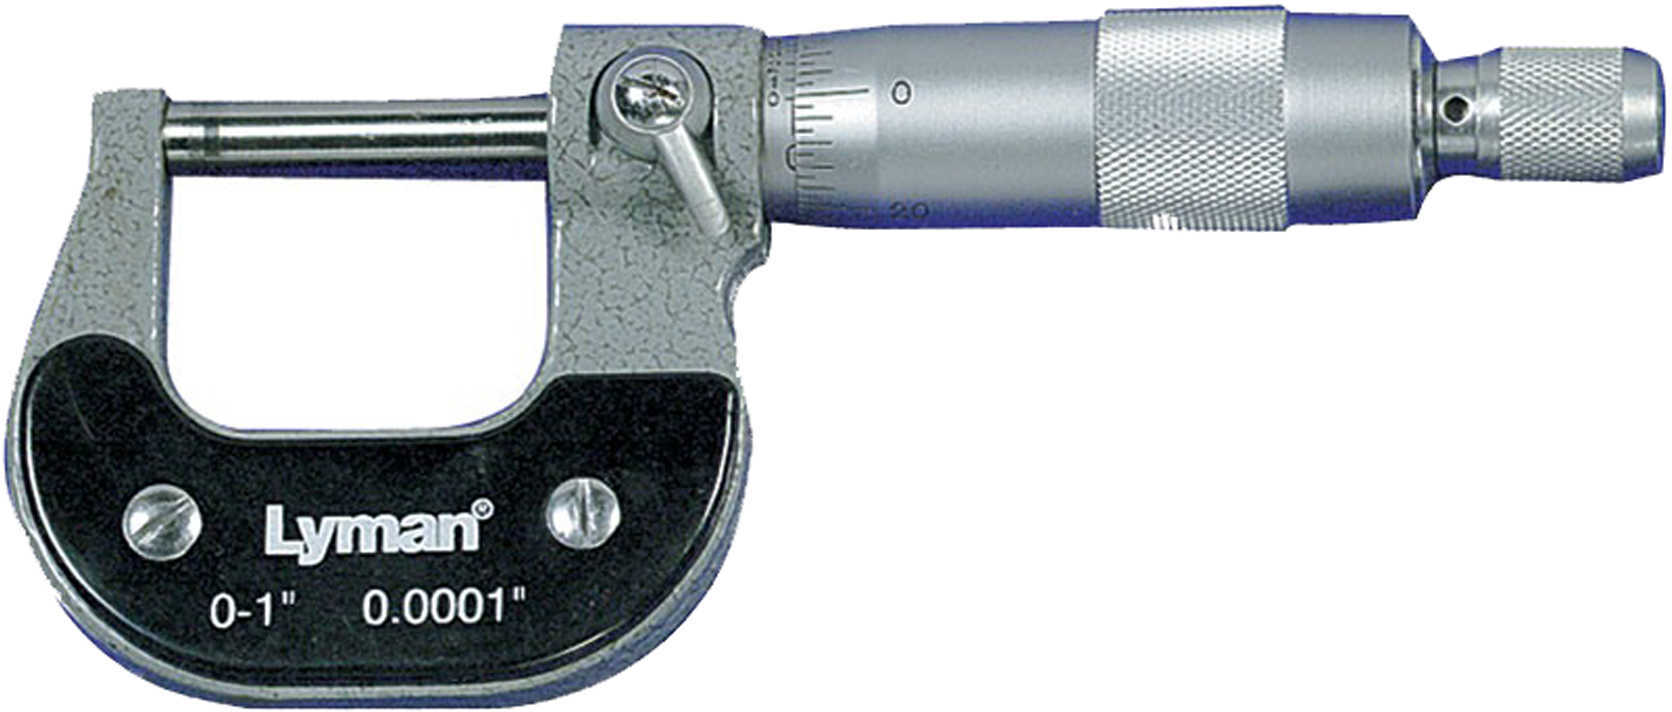 Lyman 1" Reloaders Micrometer